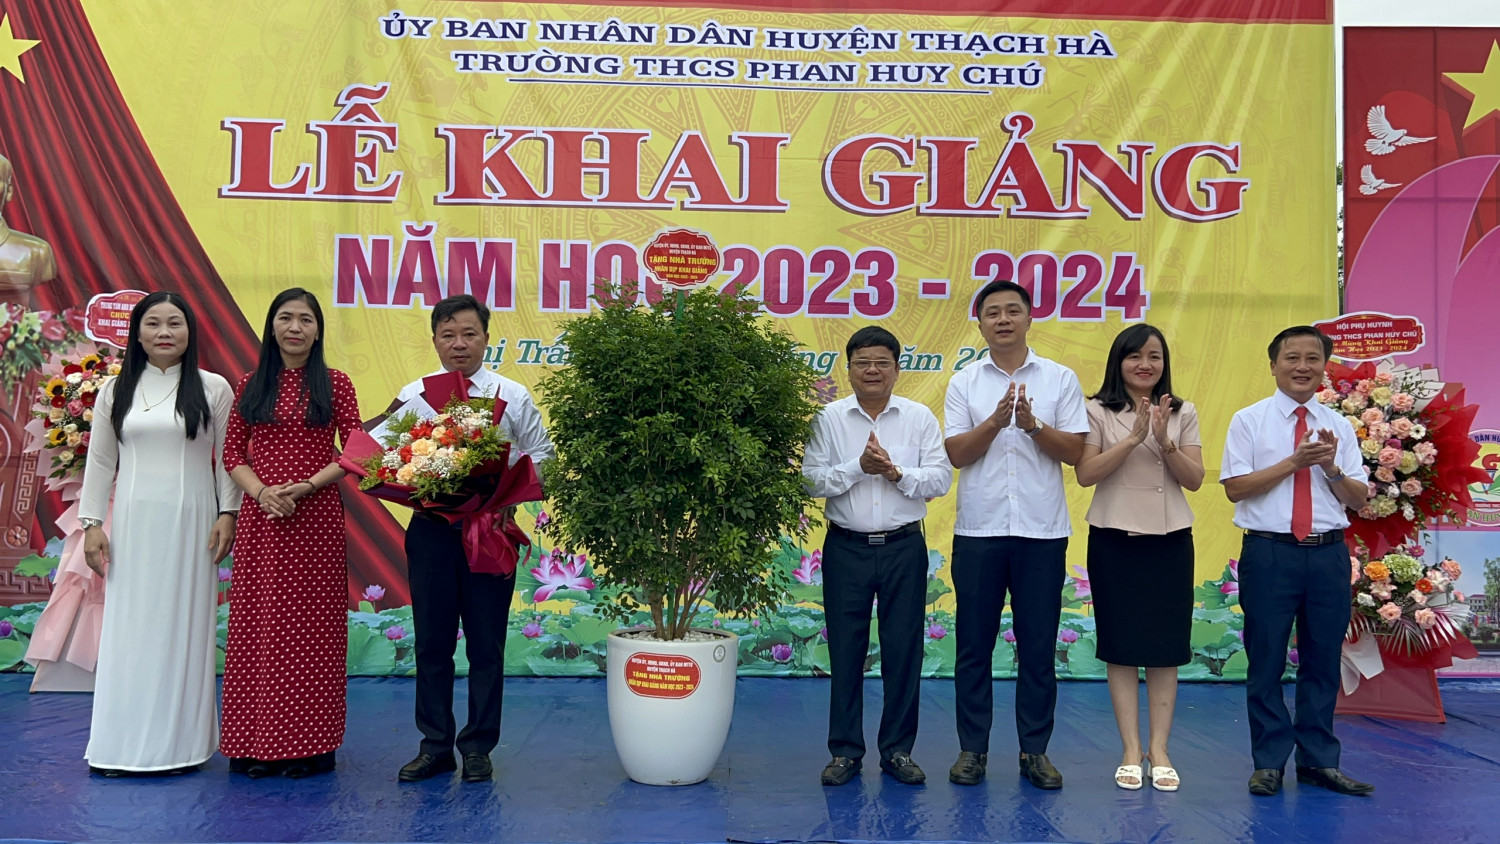 Trường THCS Phan Huy Chú tổ chức Lễ khai giảng năm học 2023-2024